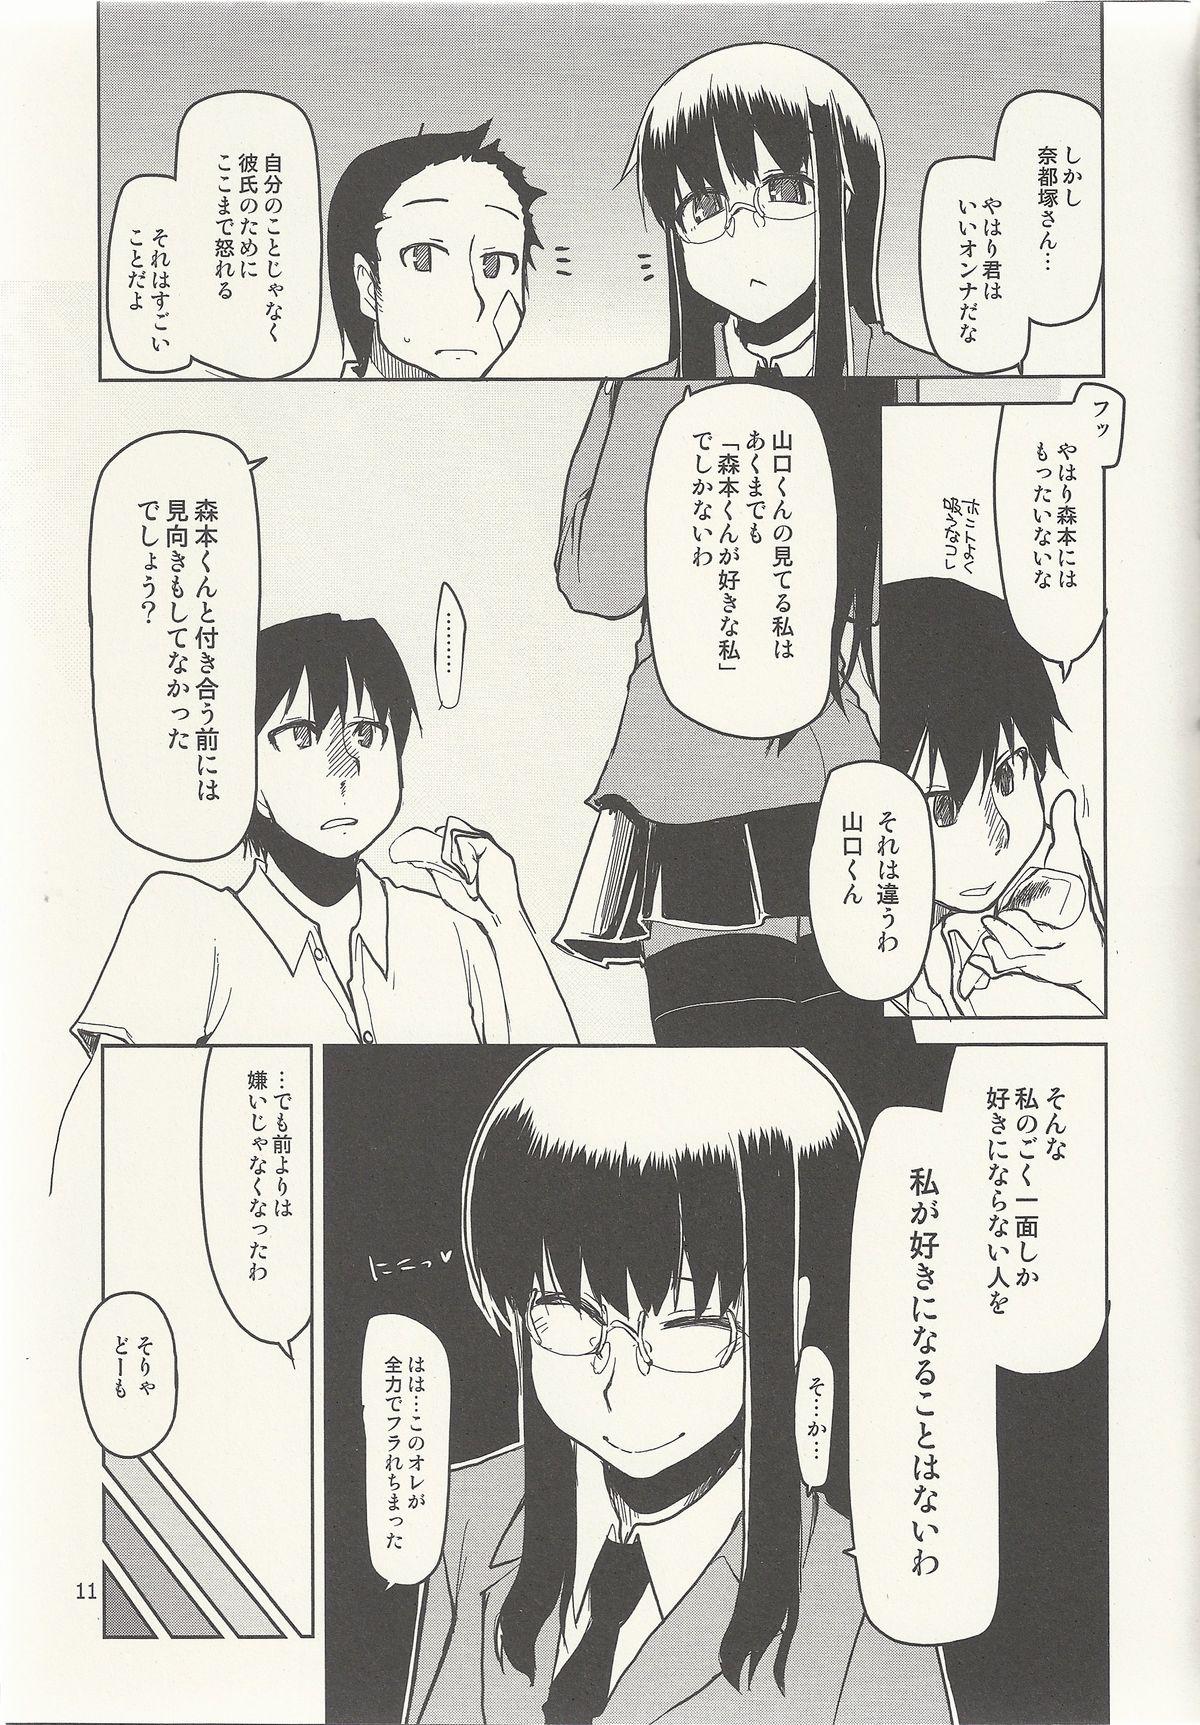 Natsuzuka-san no Himitsu. Vol. 6 Kanketsu Hen 12